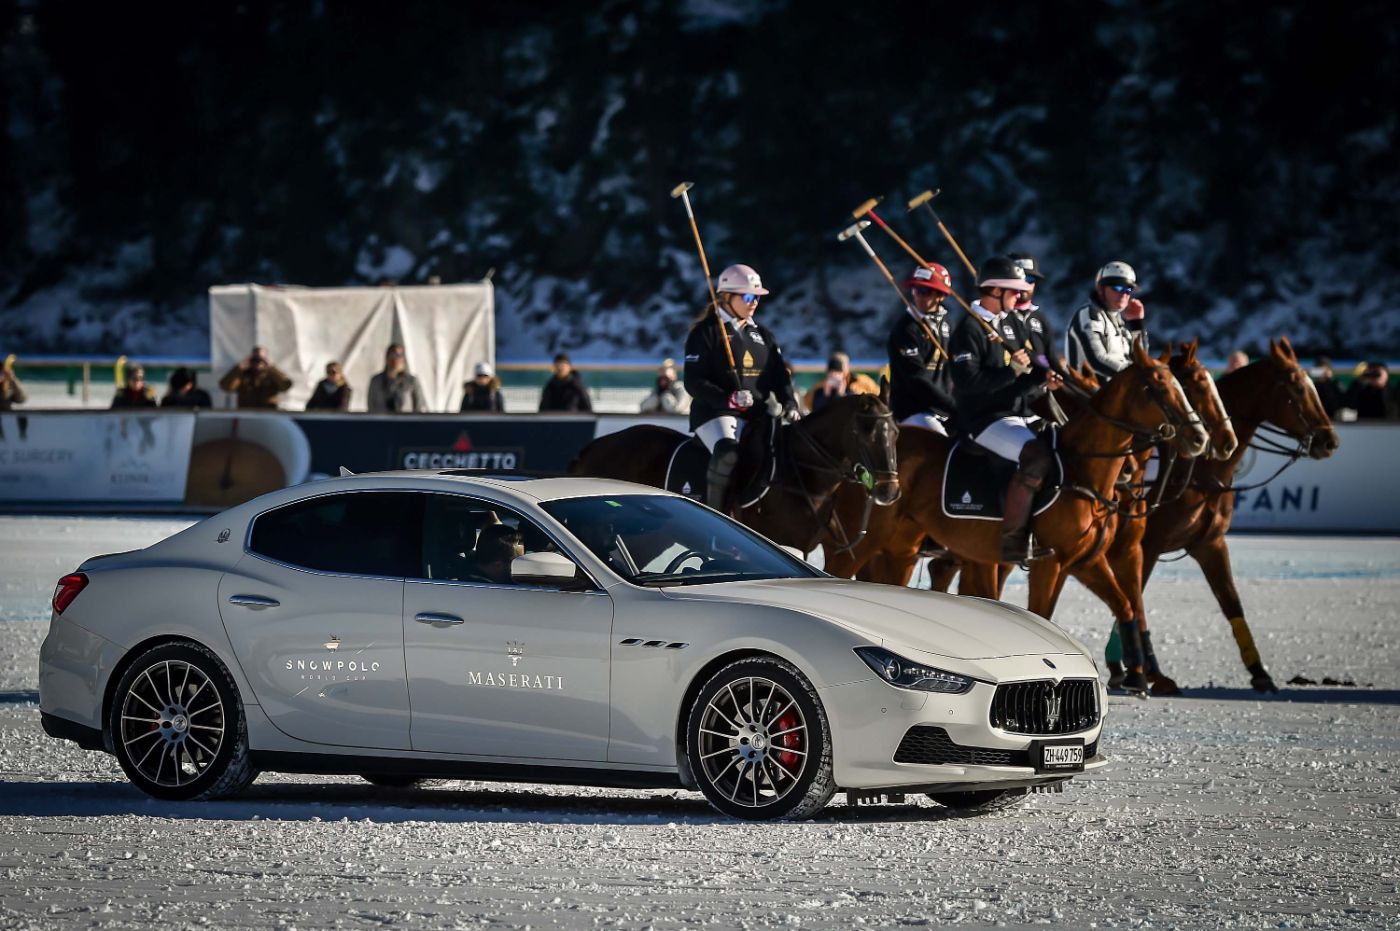 Maserati Polo Tour 2017 - Snow Polo St Moritz - Ghibli and Maserati Polo Team